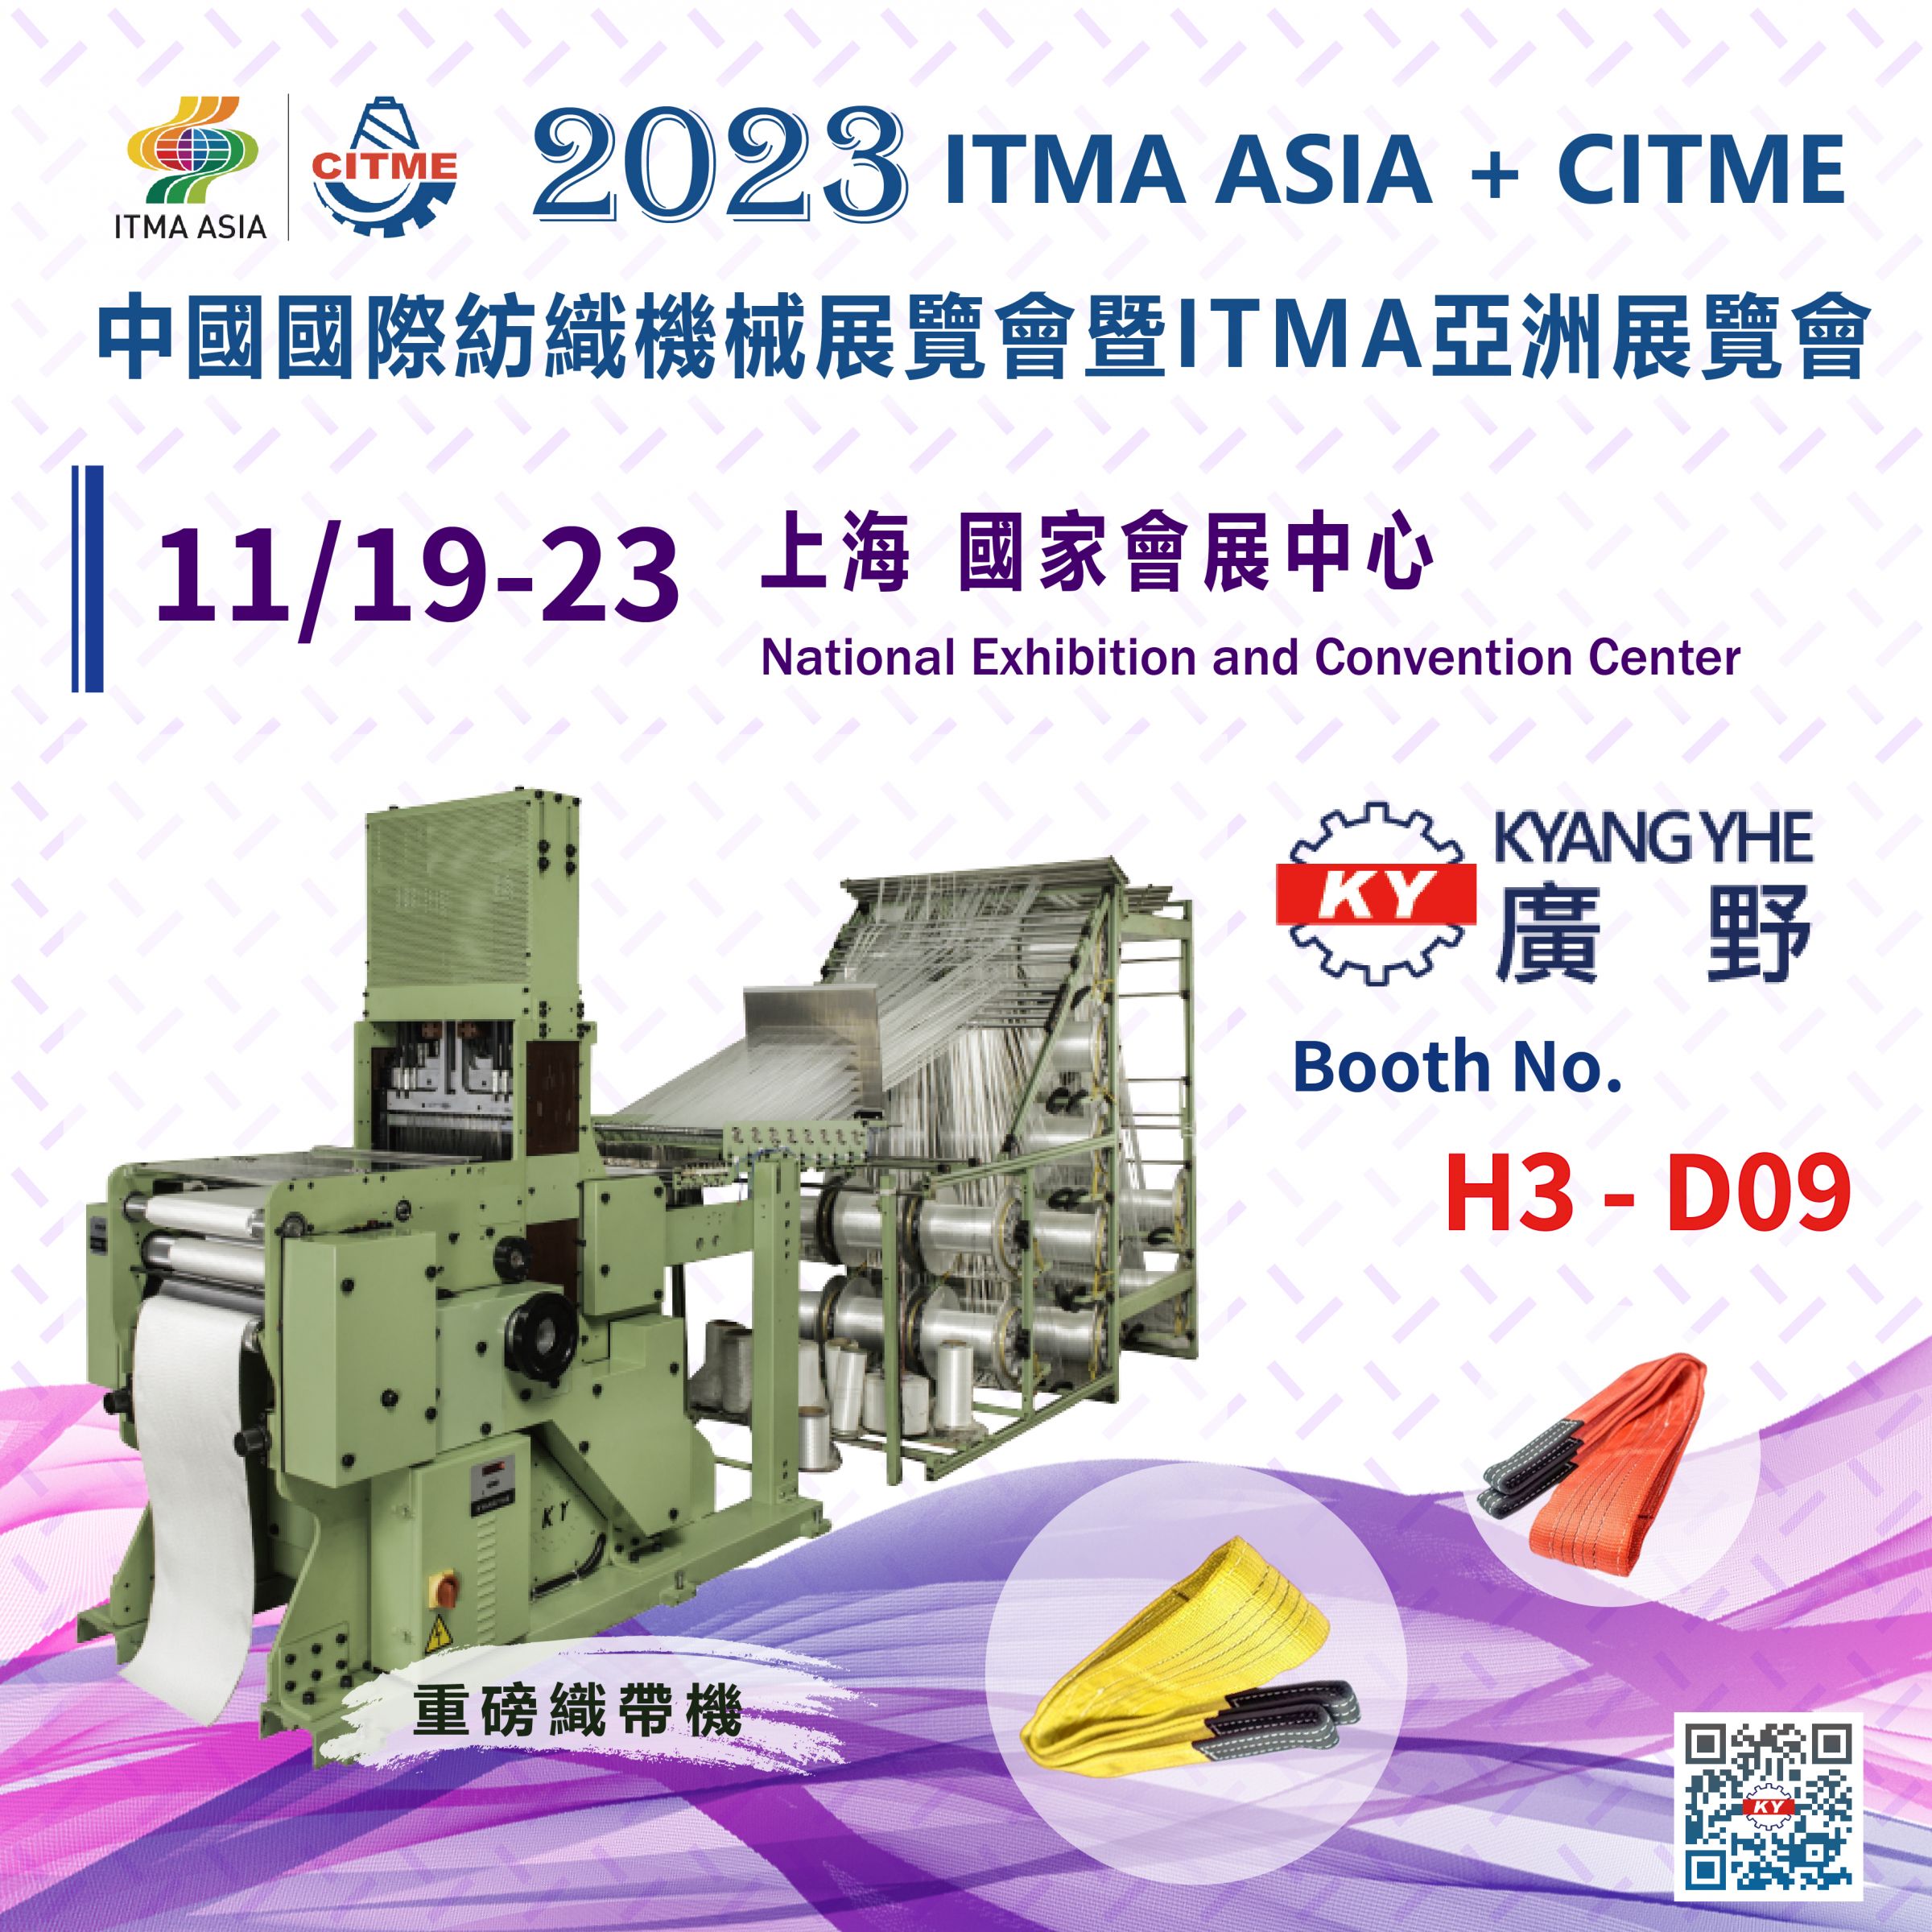 2023 ITMA ASIA + CITME в Шанхае, Китай